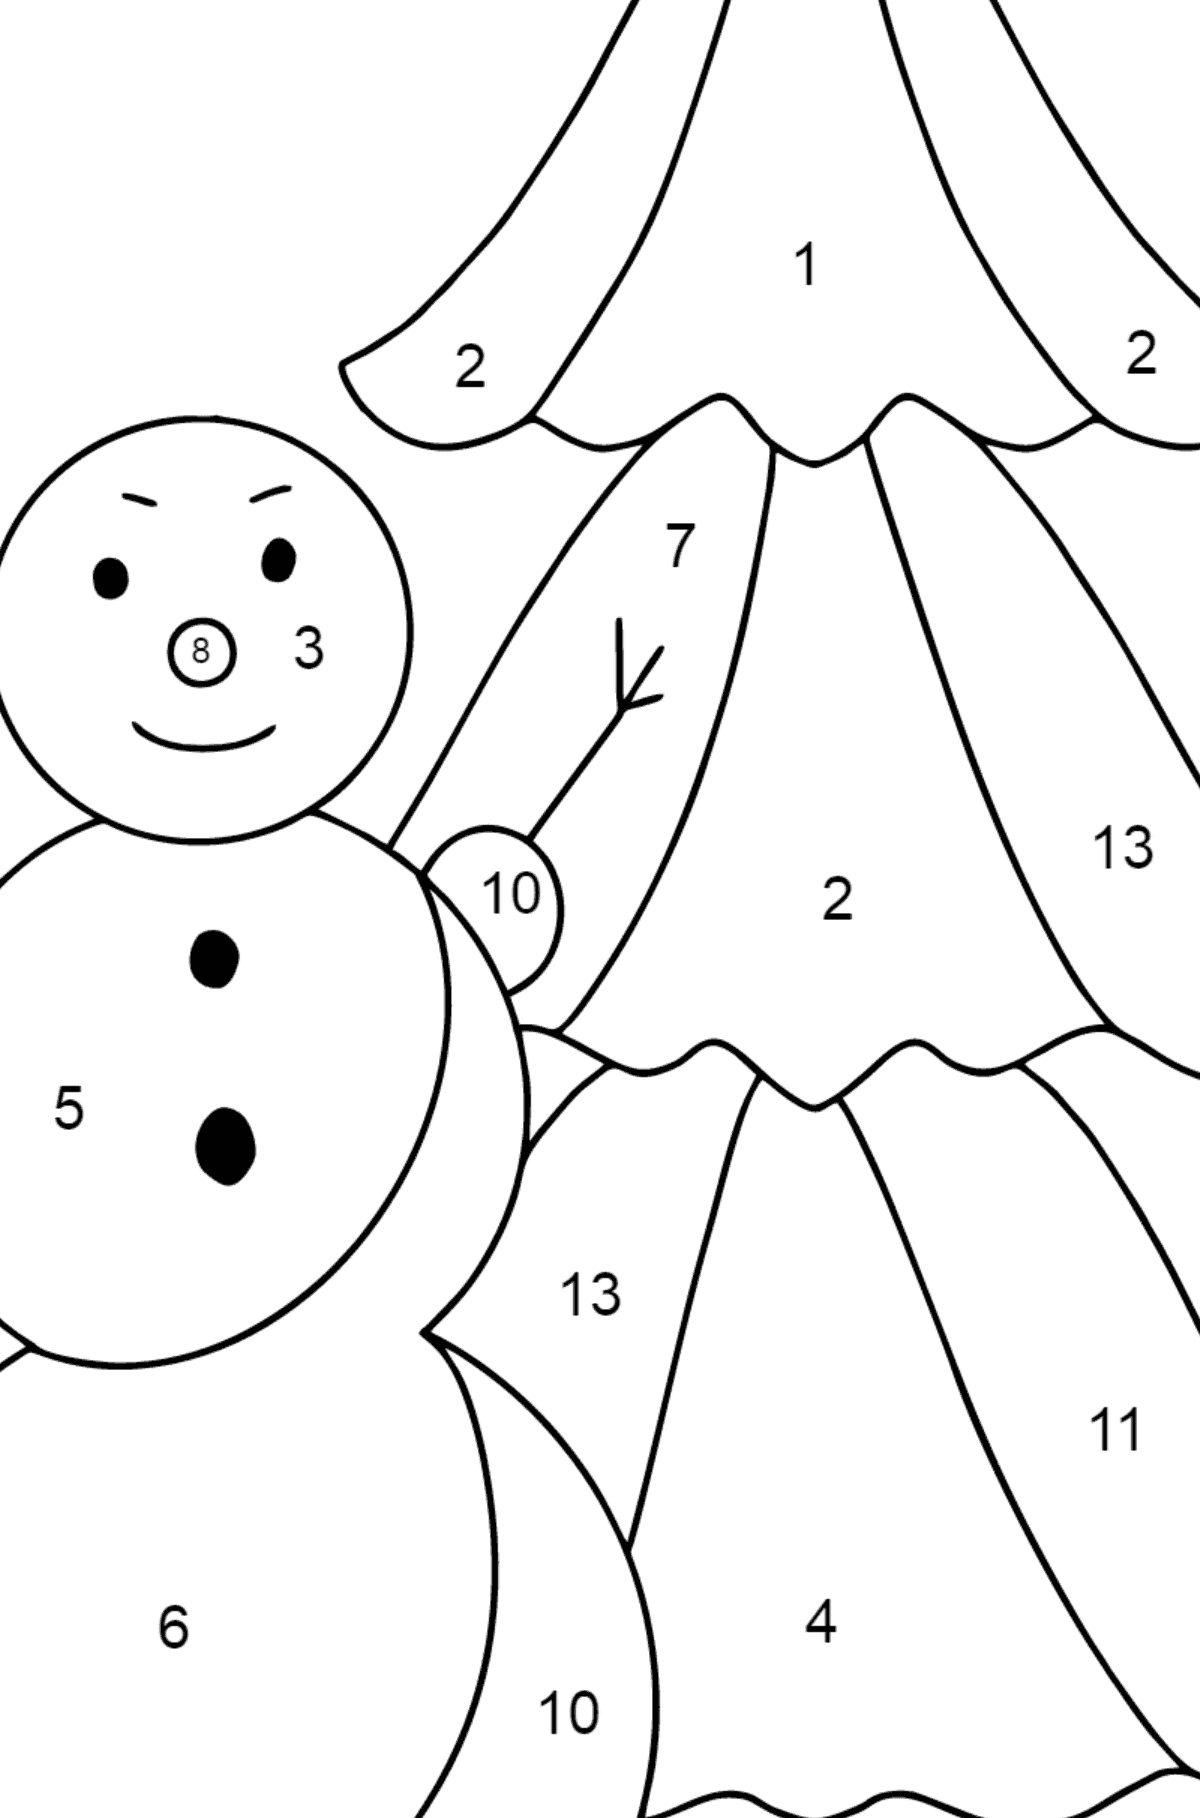 Tegning til farvning snemand og træ (vanskeligt) - Farvelægning side af tallene for børn